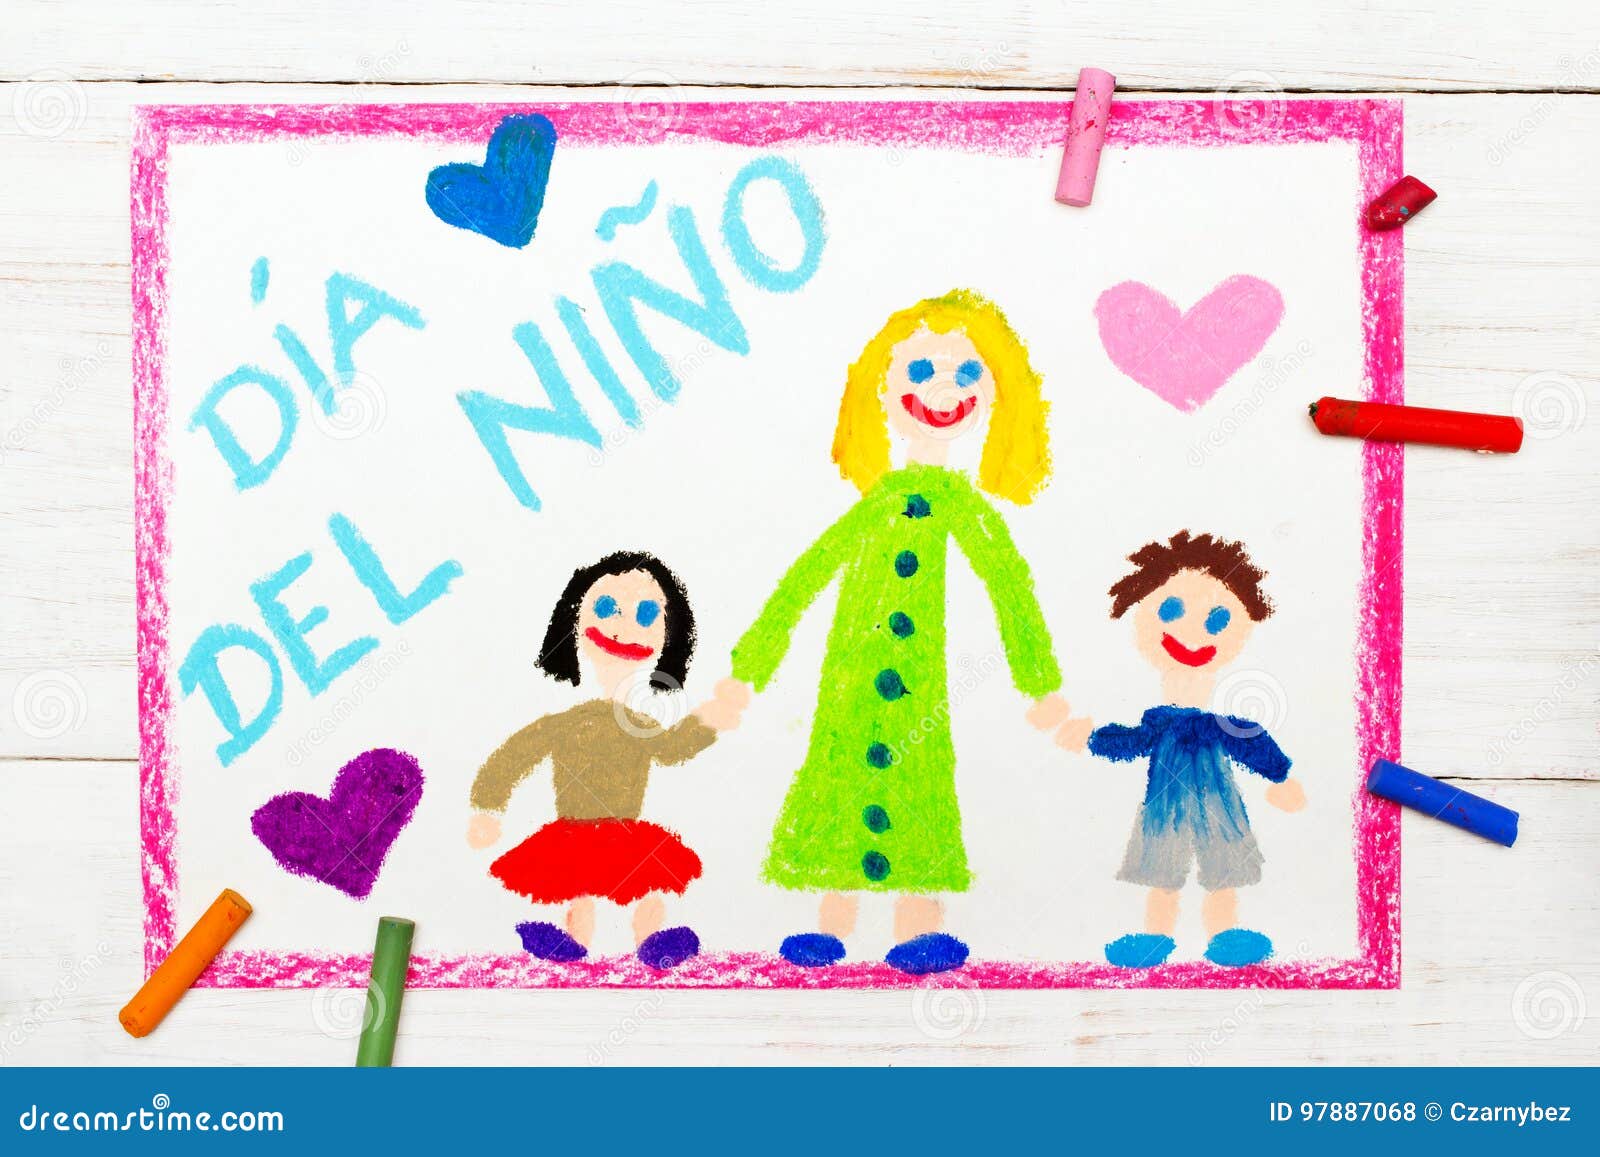 children`s day card with spanish words children`s day